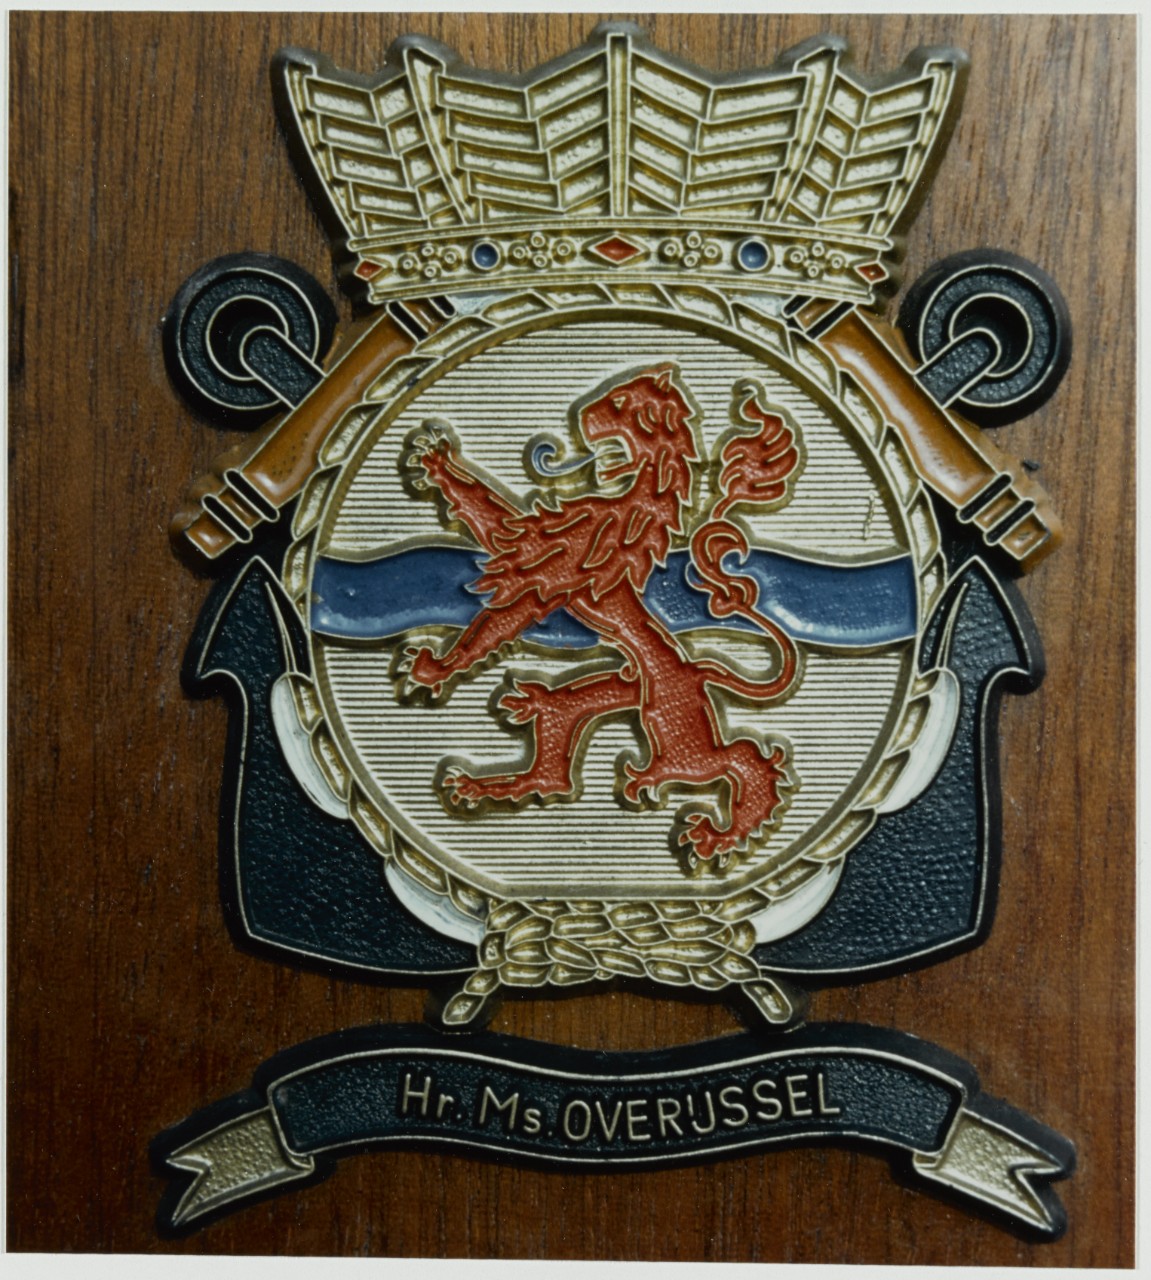 Insignia: Hr.Ms. OVERUSSEL or OVERIJSSEL (Netherlands Destroyer, 1955)